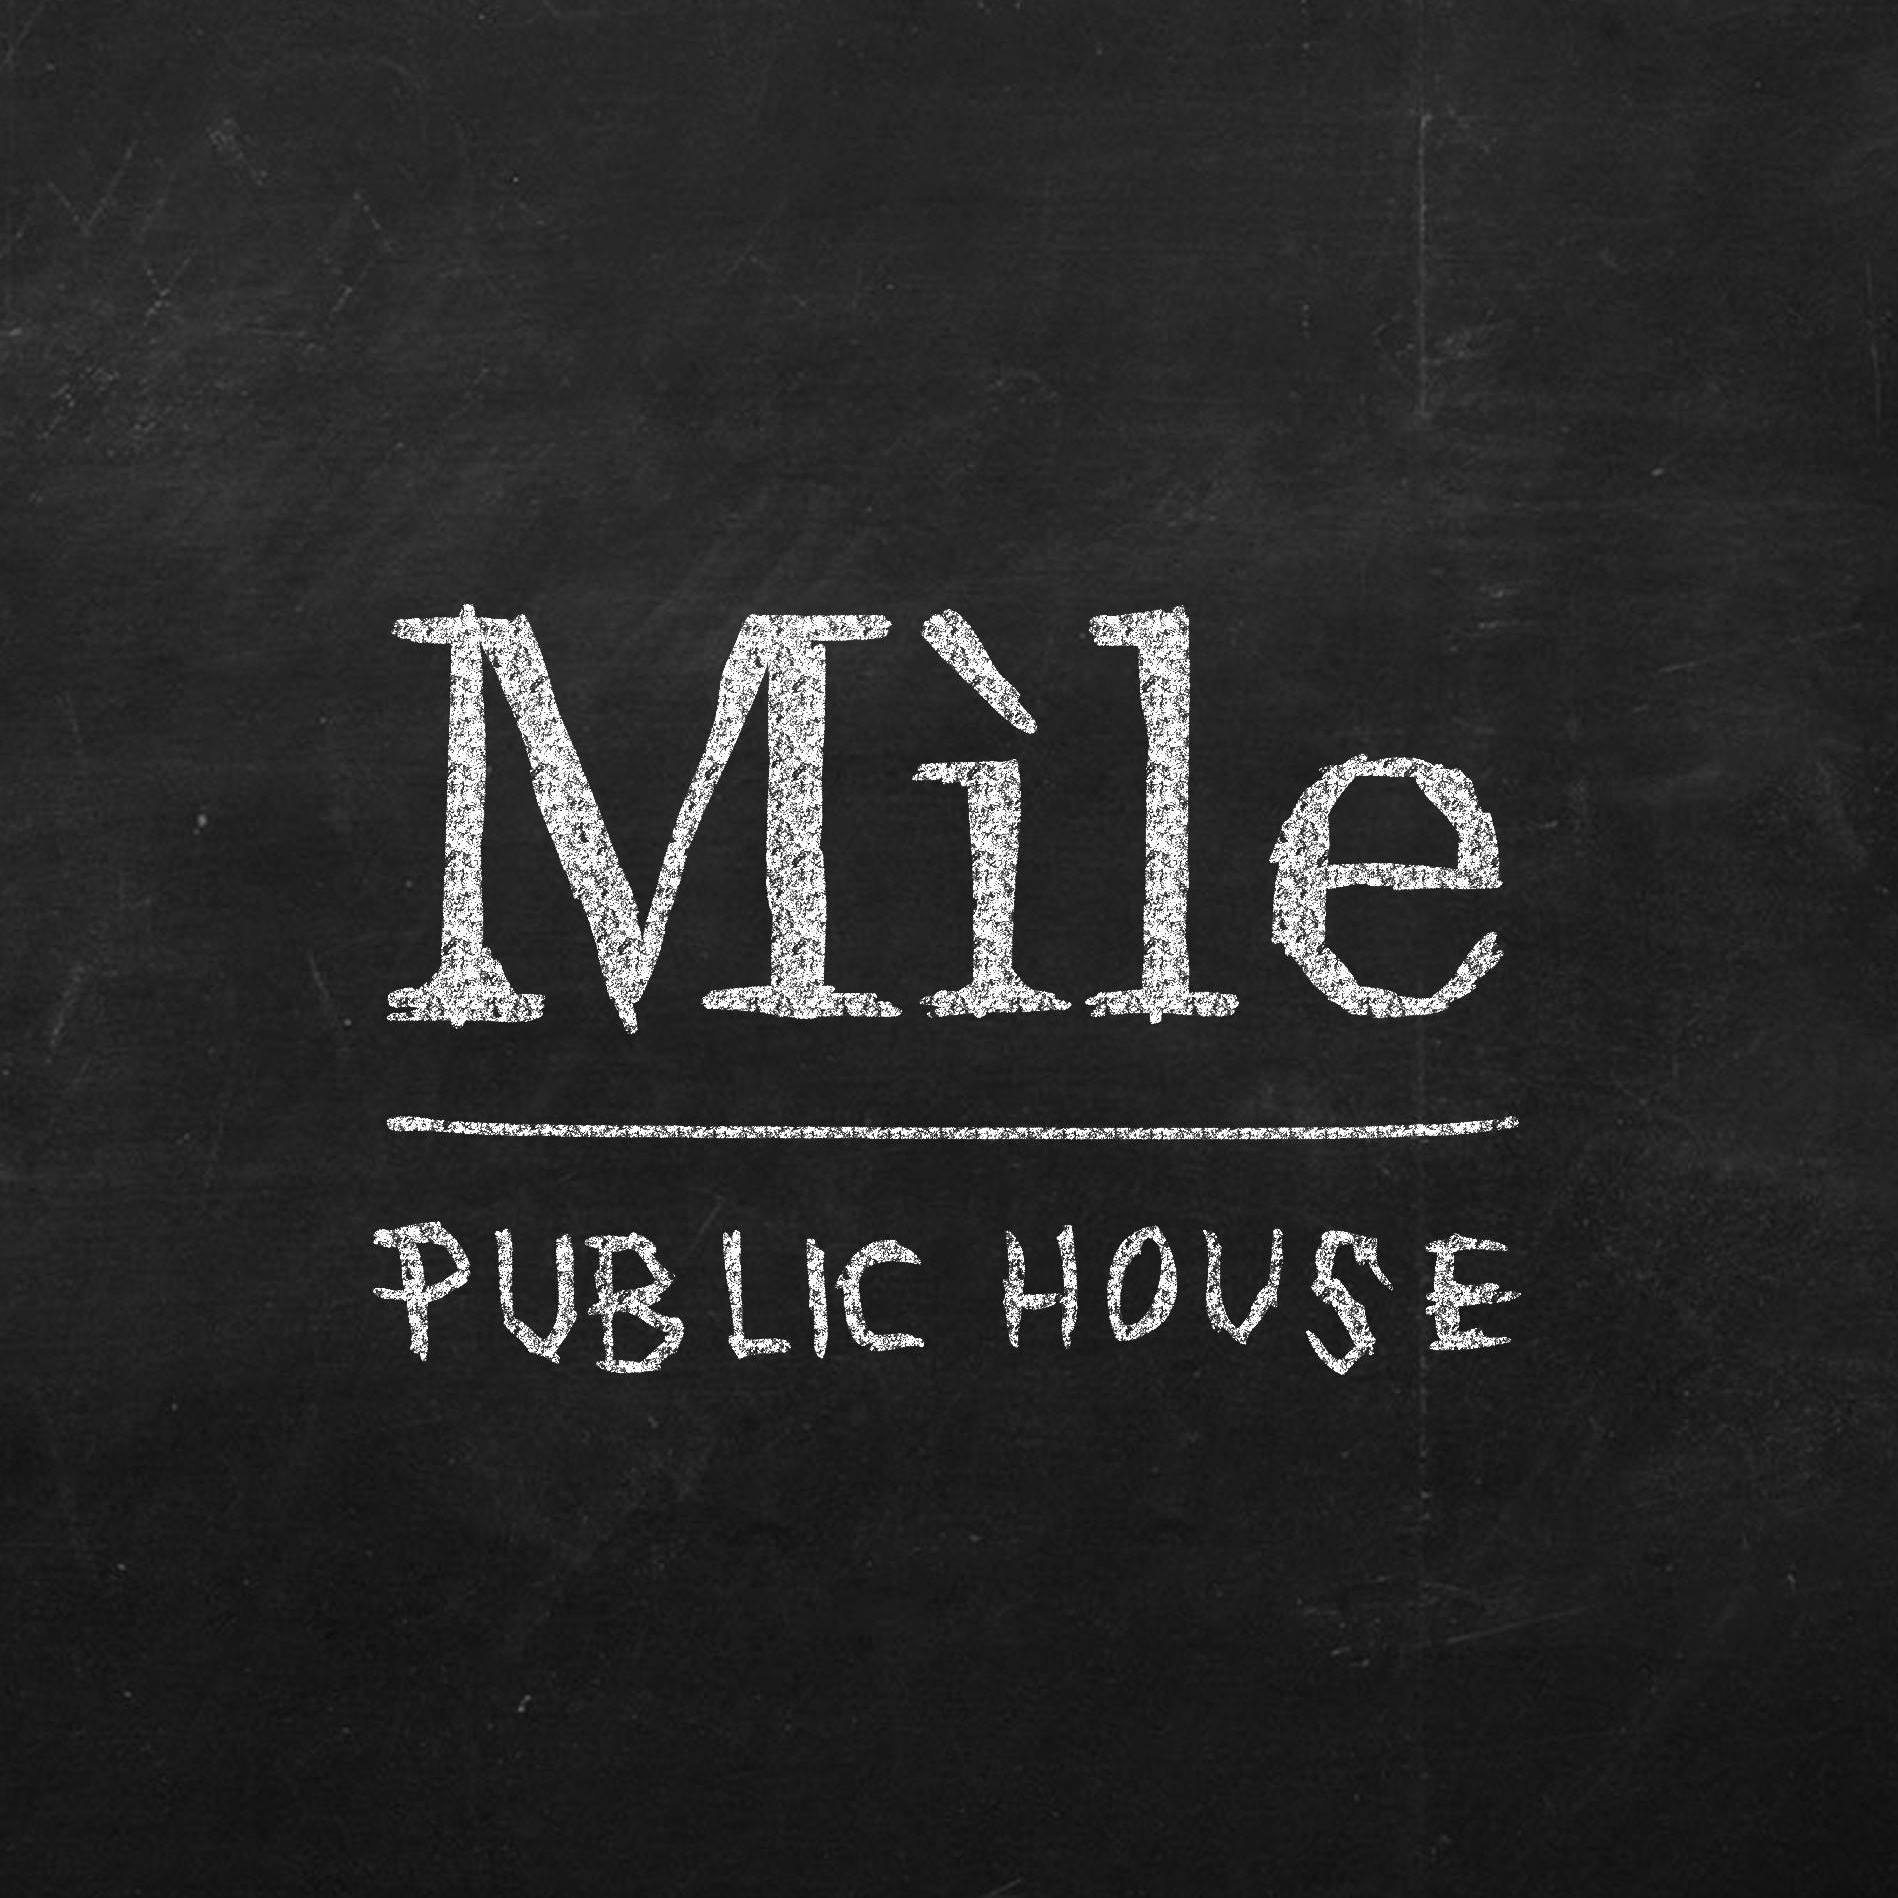 Annuaire Mile public house